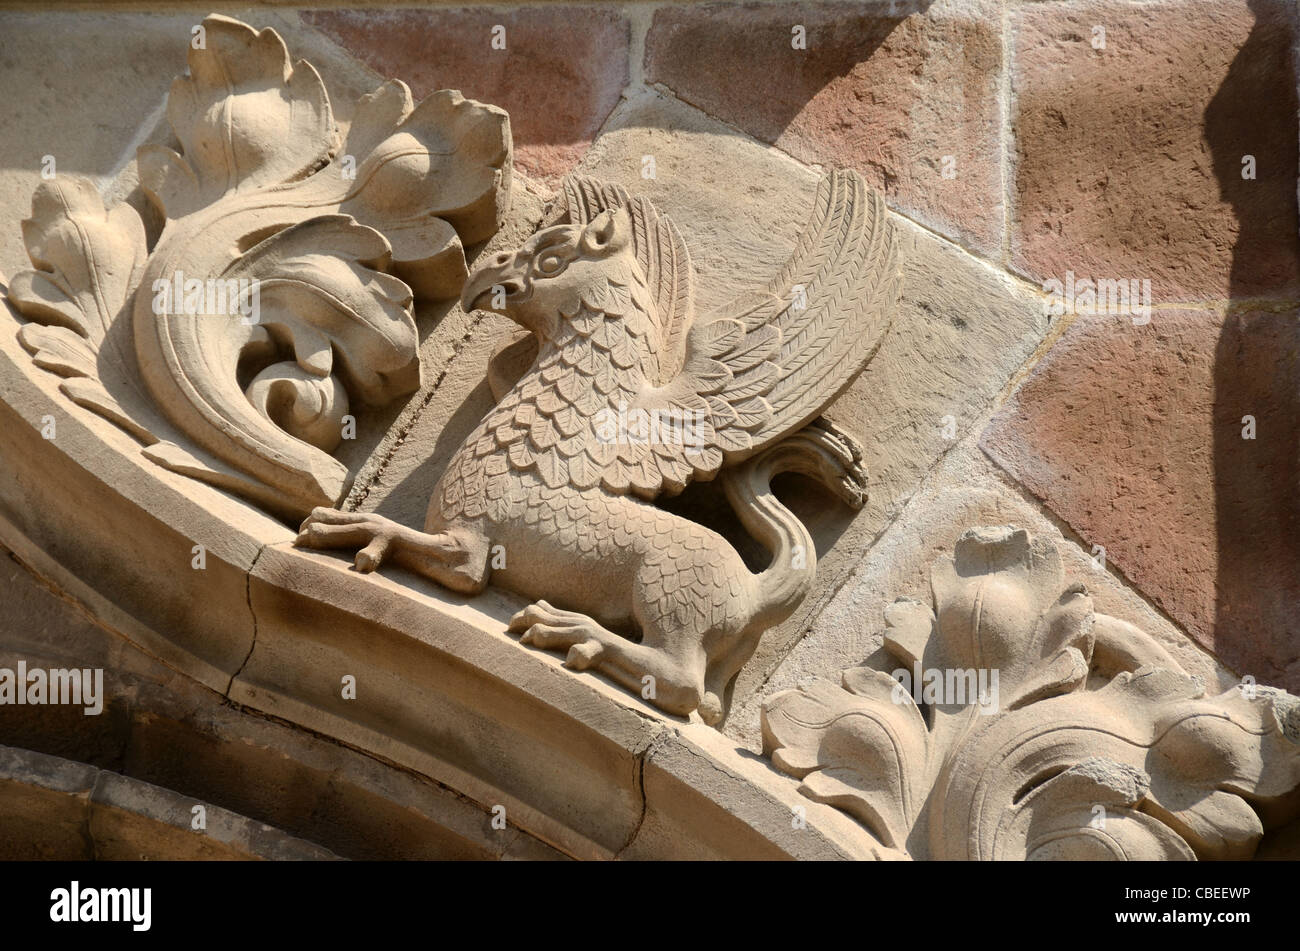 Sculpture en pierre de Dragon, Griffin, Griffon ou Gryphon à l'entrée de la cathédrale Saint-Léonard Fréjus Var France Banque D'Images